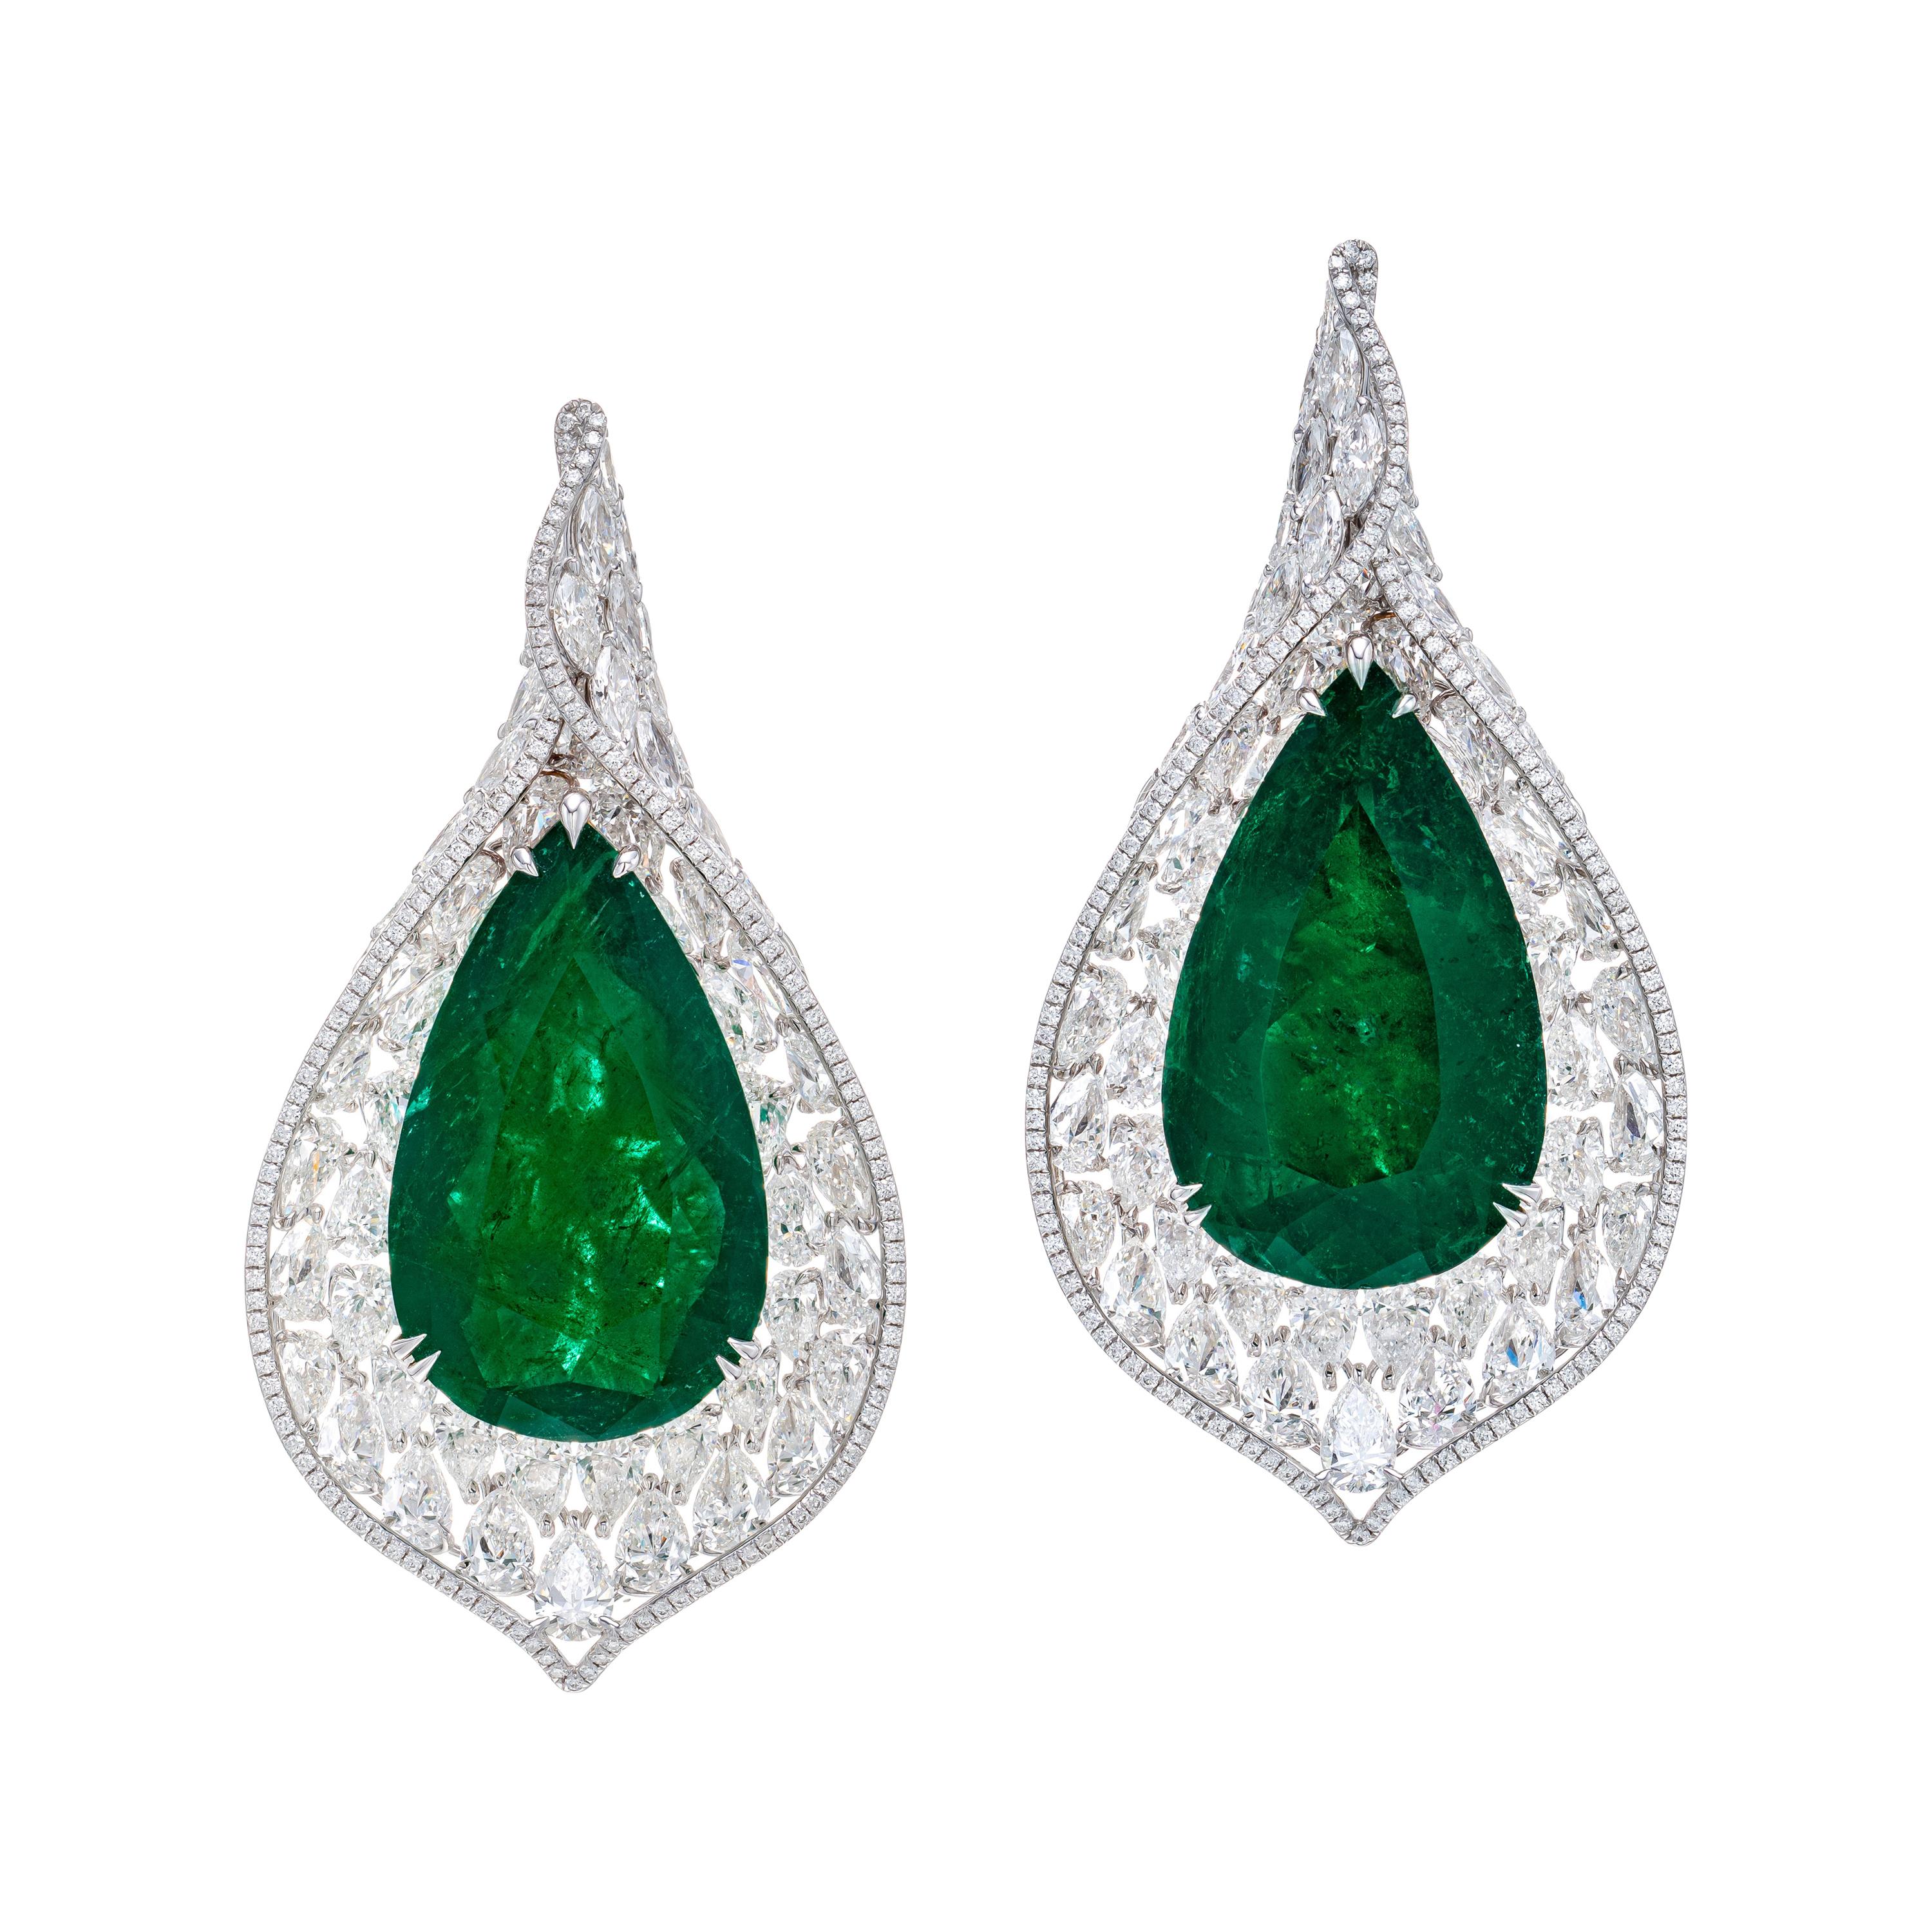 Gubelin Certified 65.97 Carat Colombian Emerald Diamond Earrings in 18K Gold For Sale